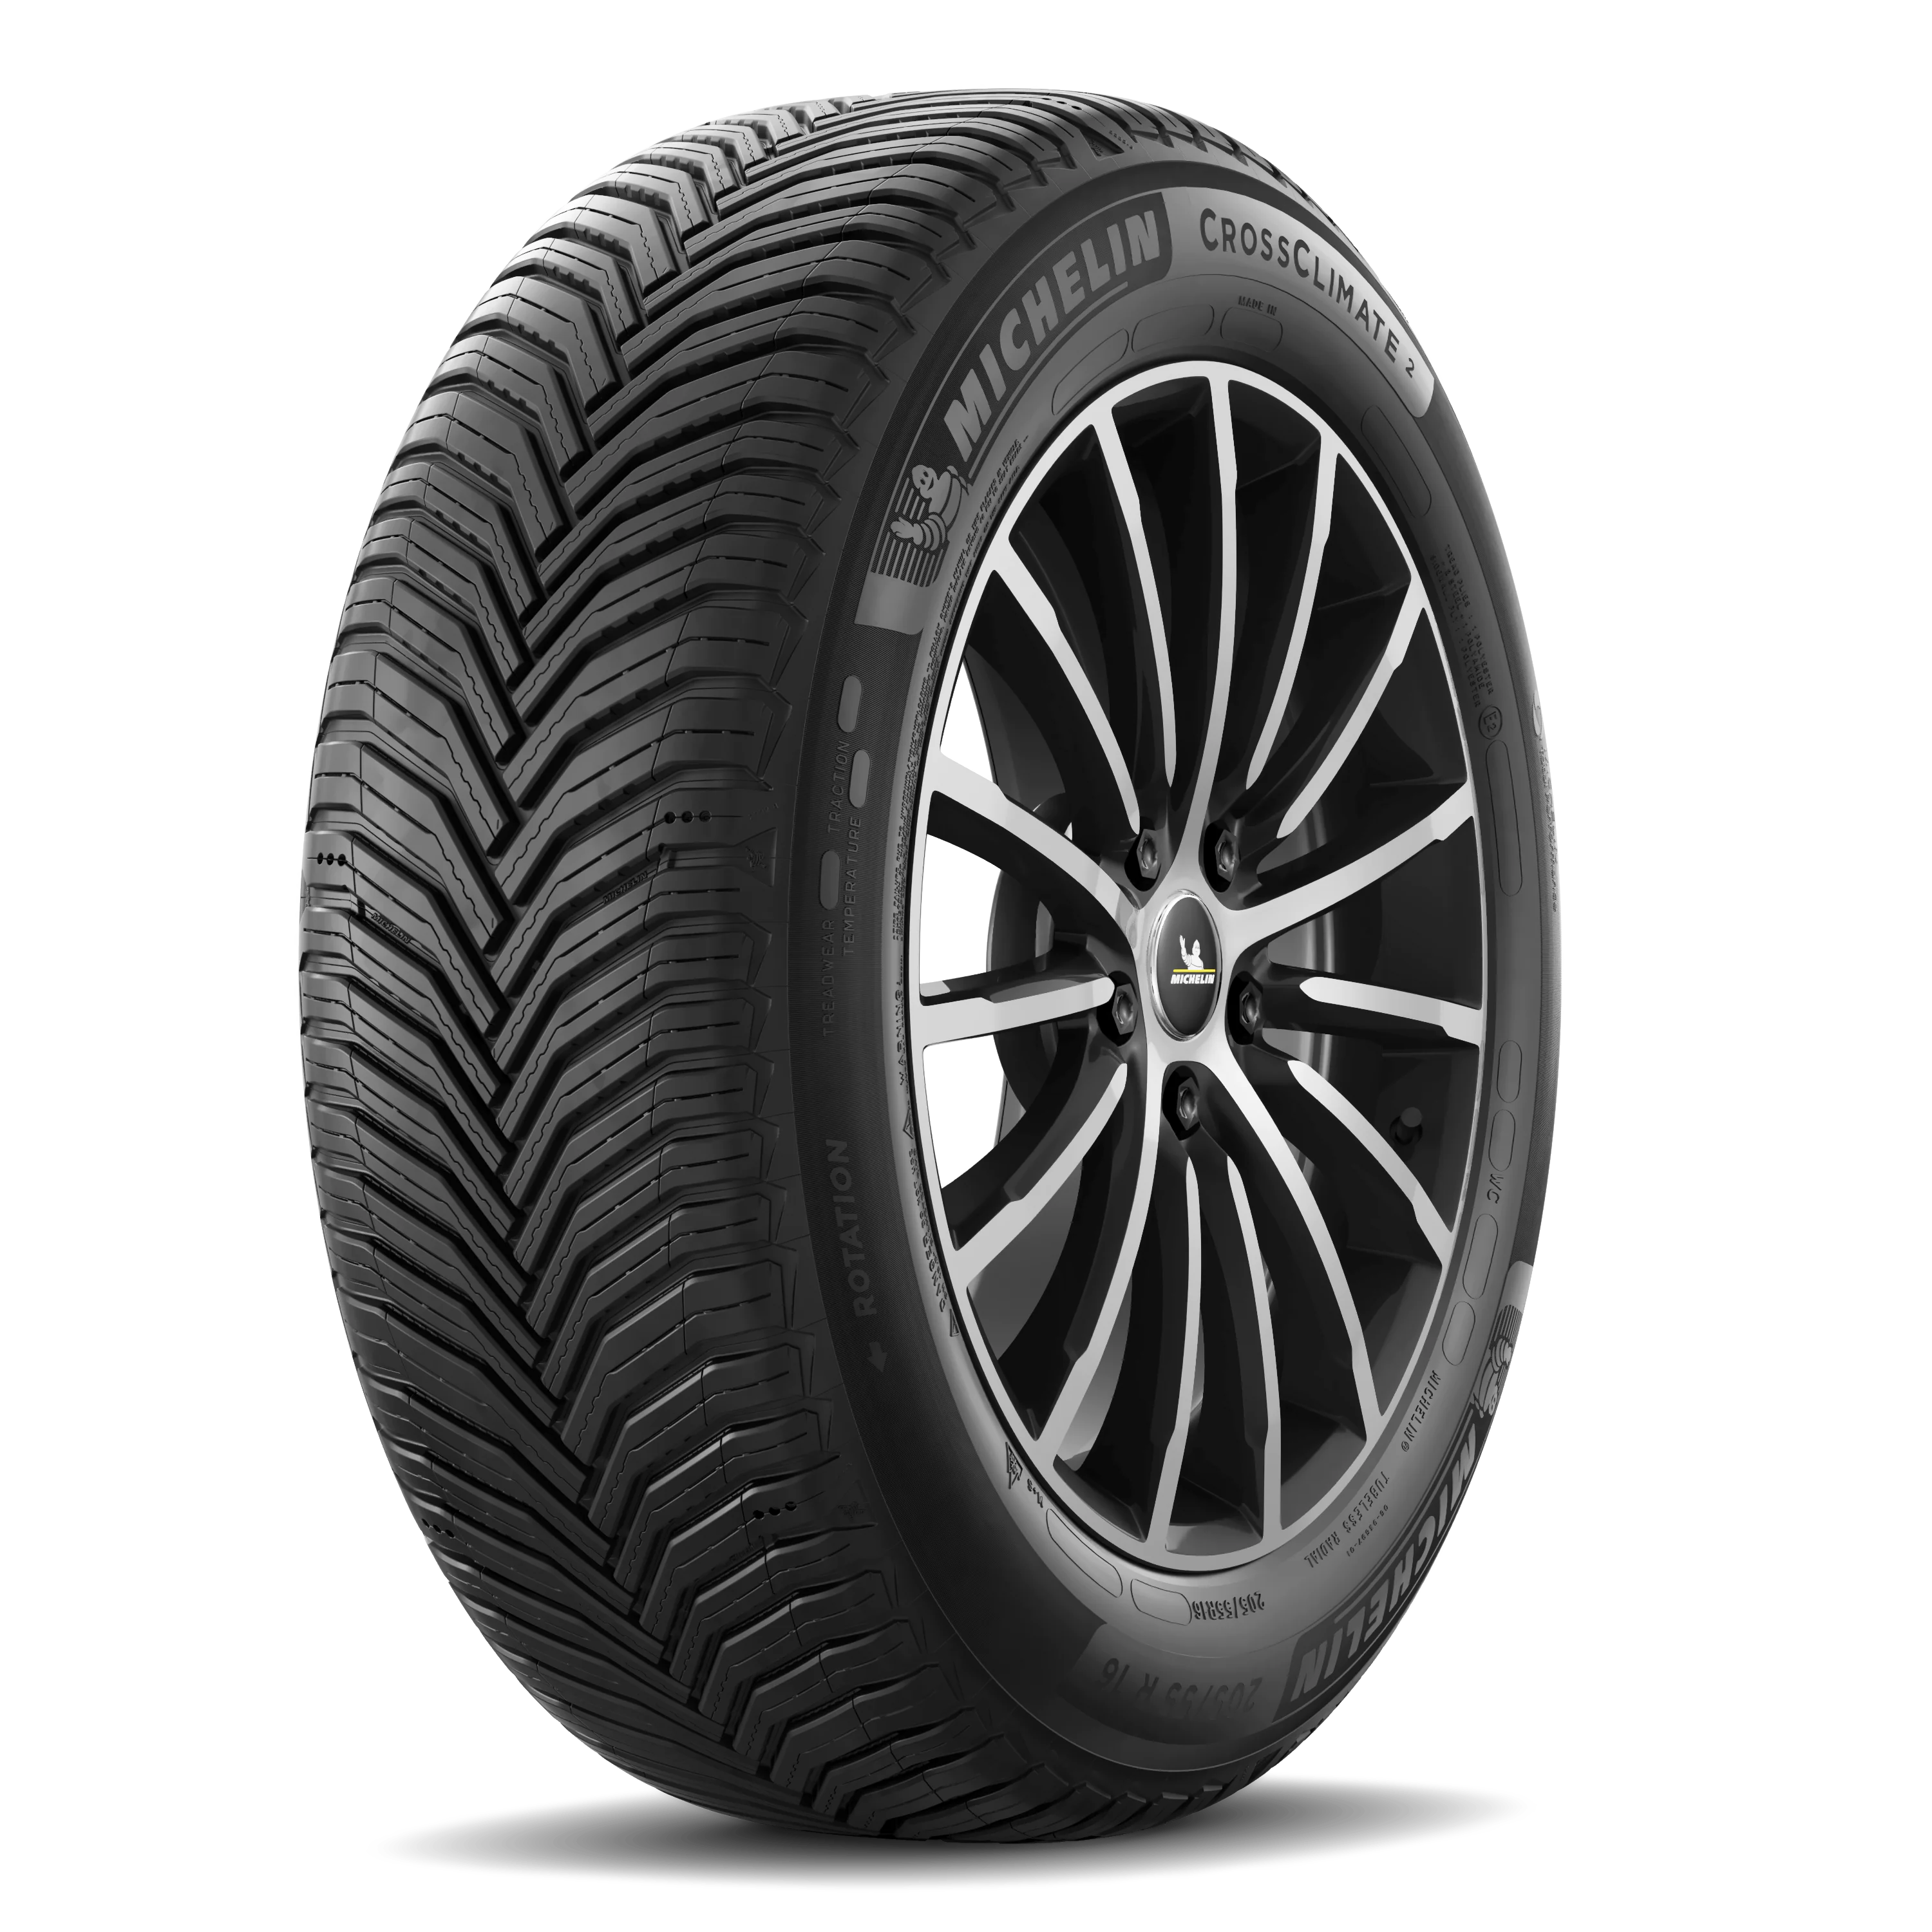 Michelin Michelin 255/45 R20 101W CROSS CLIMATE 2 SUV pneumatici nuovi All Season 